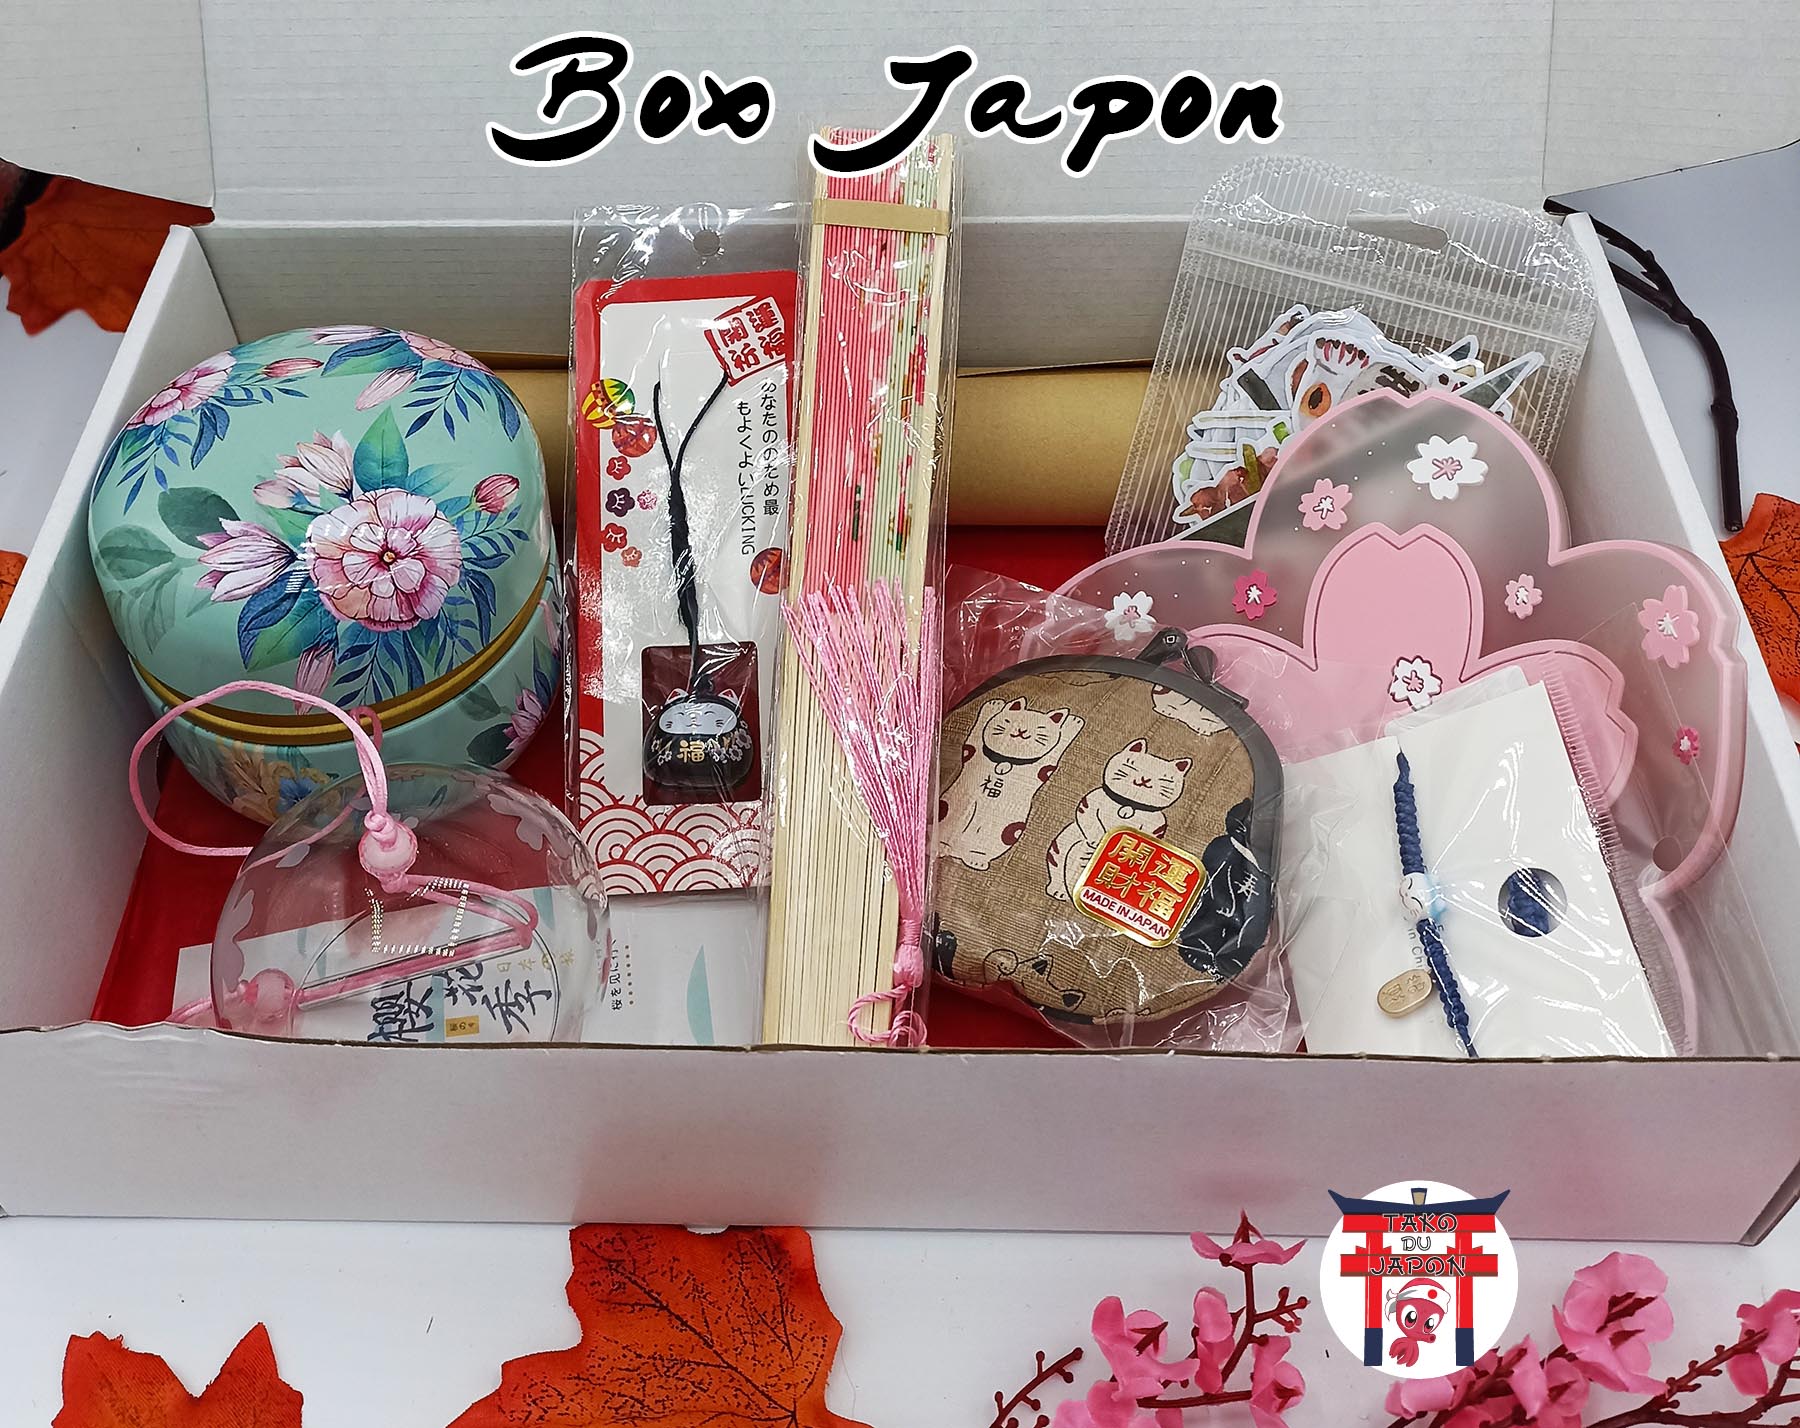 Box Japonaise  Univers du Japon